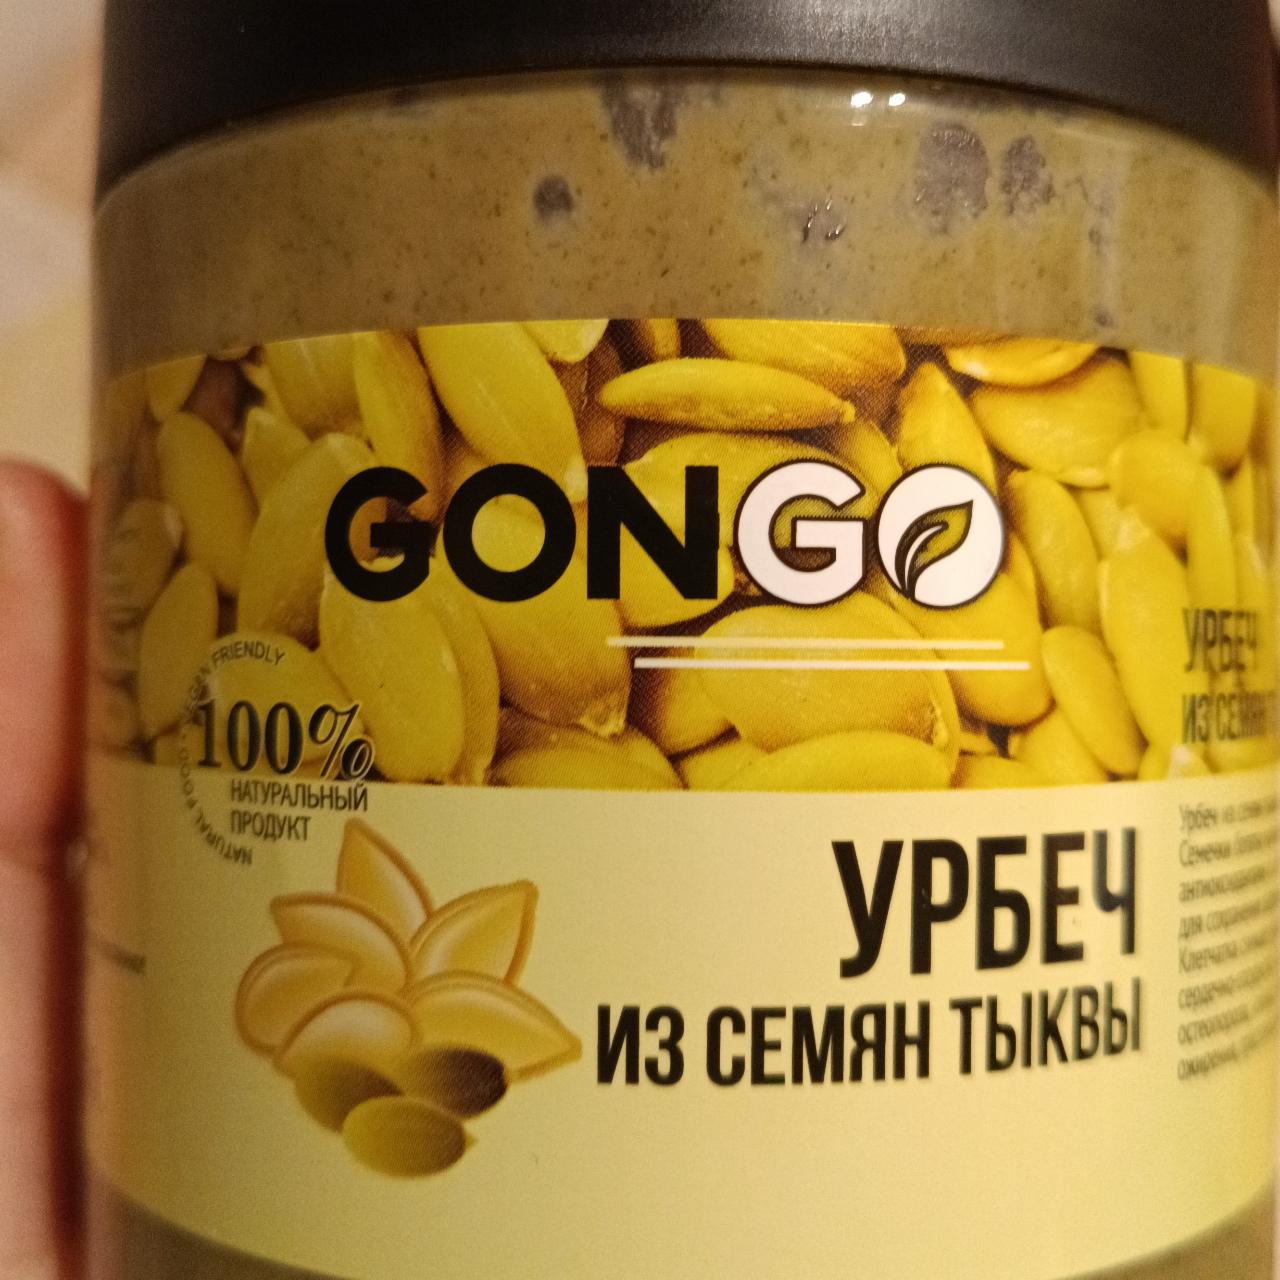 Фото - урбеч из семян тыквы Gongo